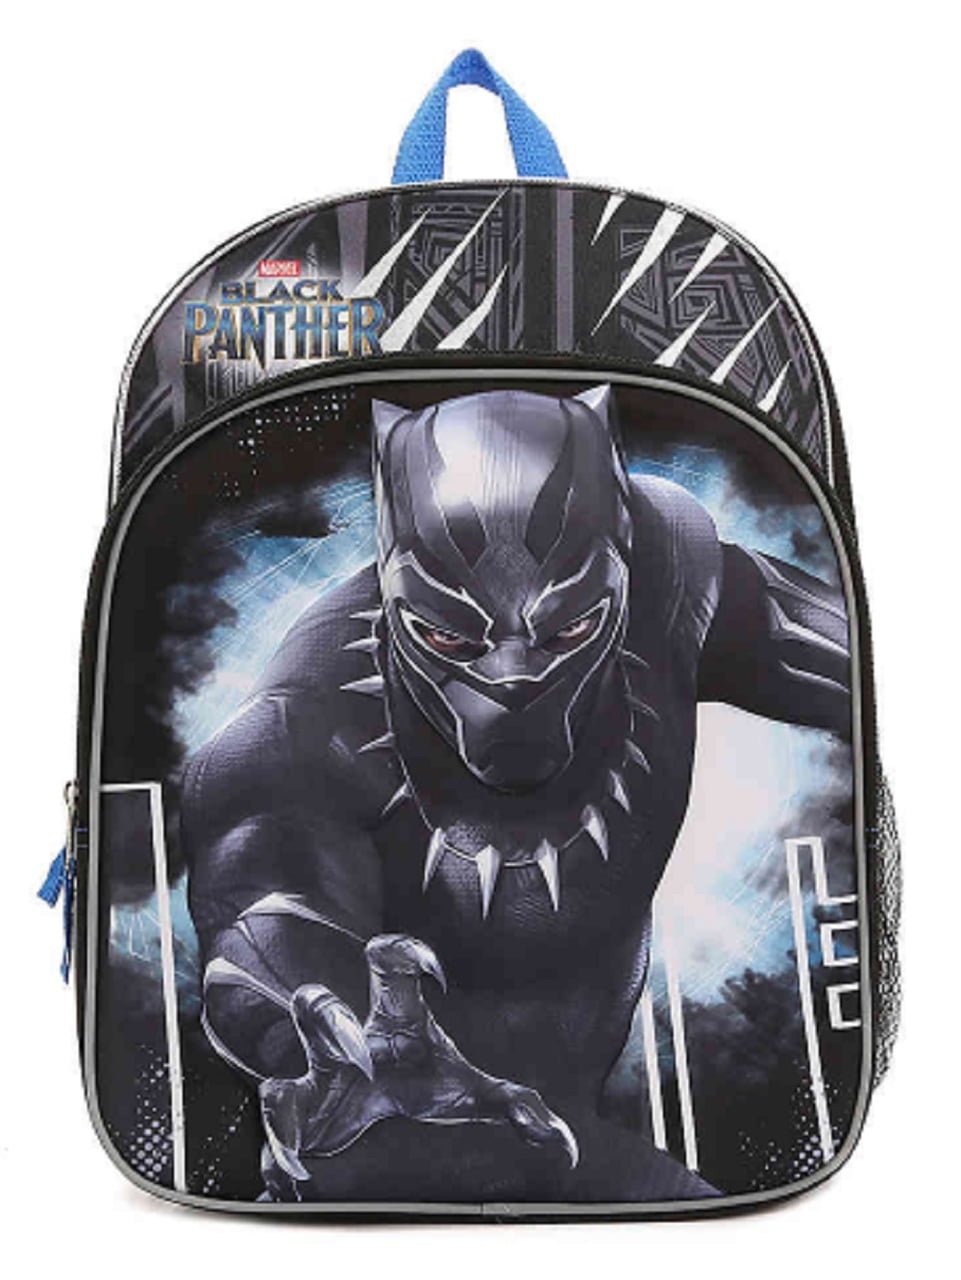 Details about   Disney Store Black Panther Backpack Marvel Avengers Tote School Bag Mask Design 